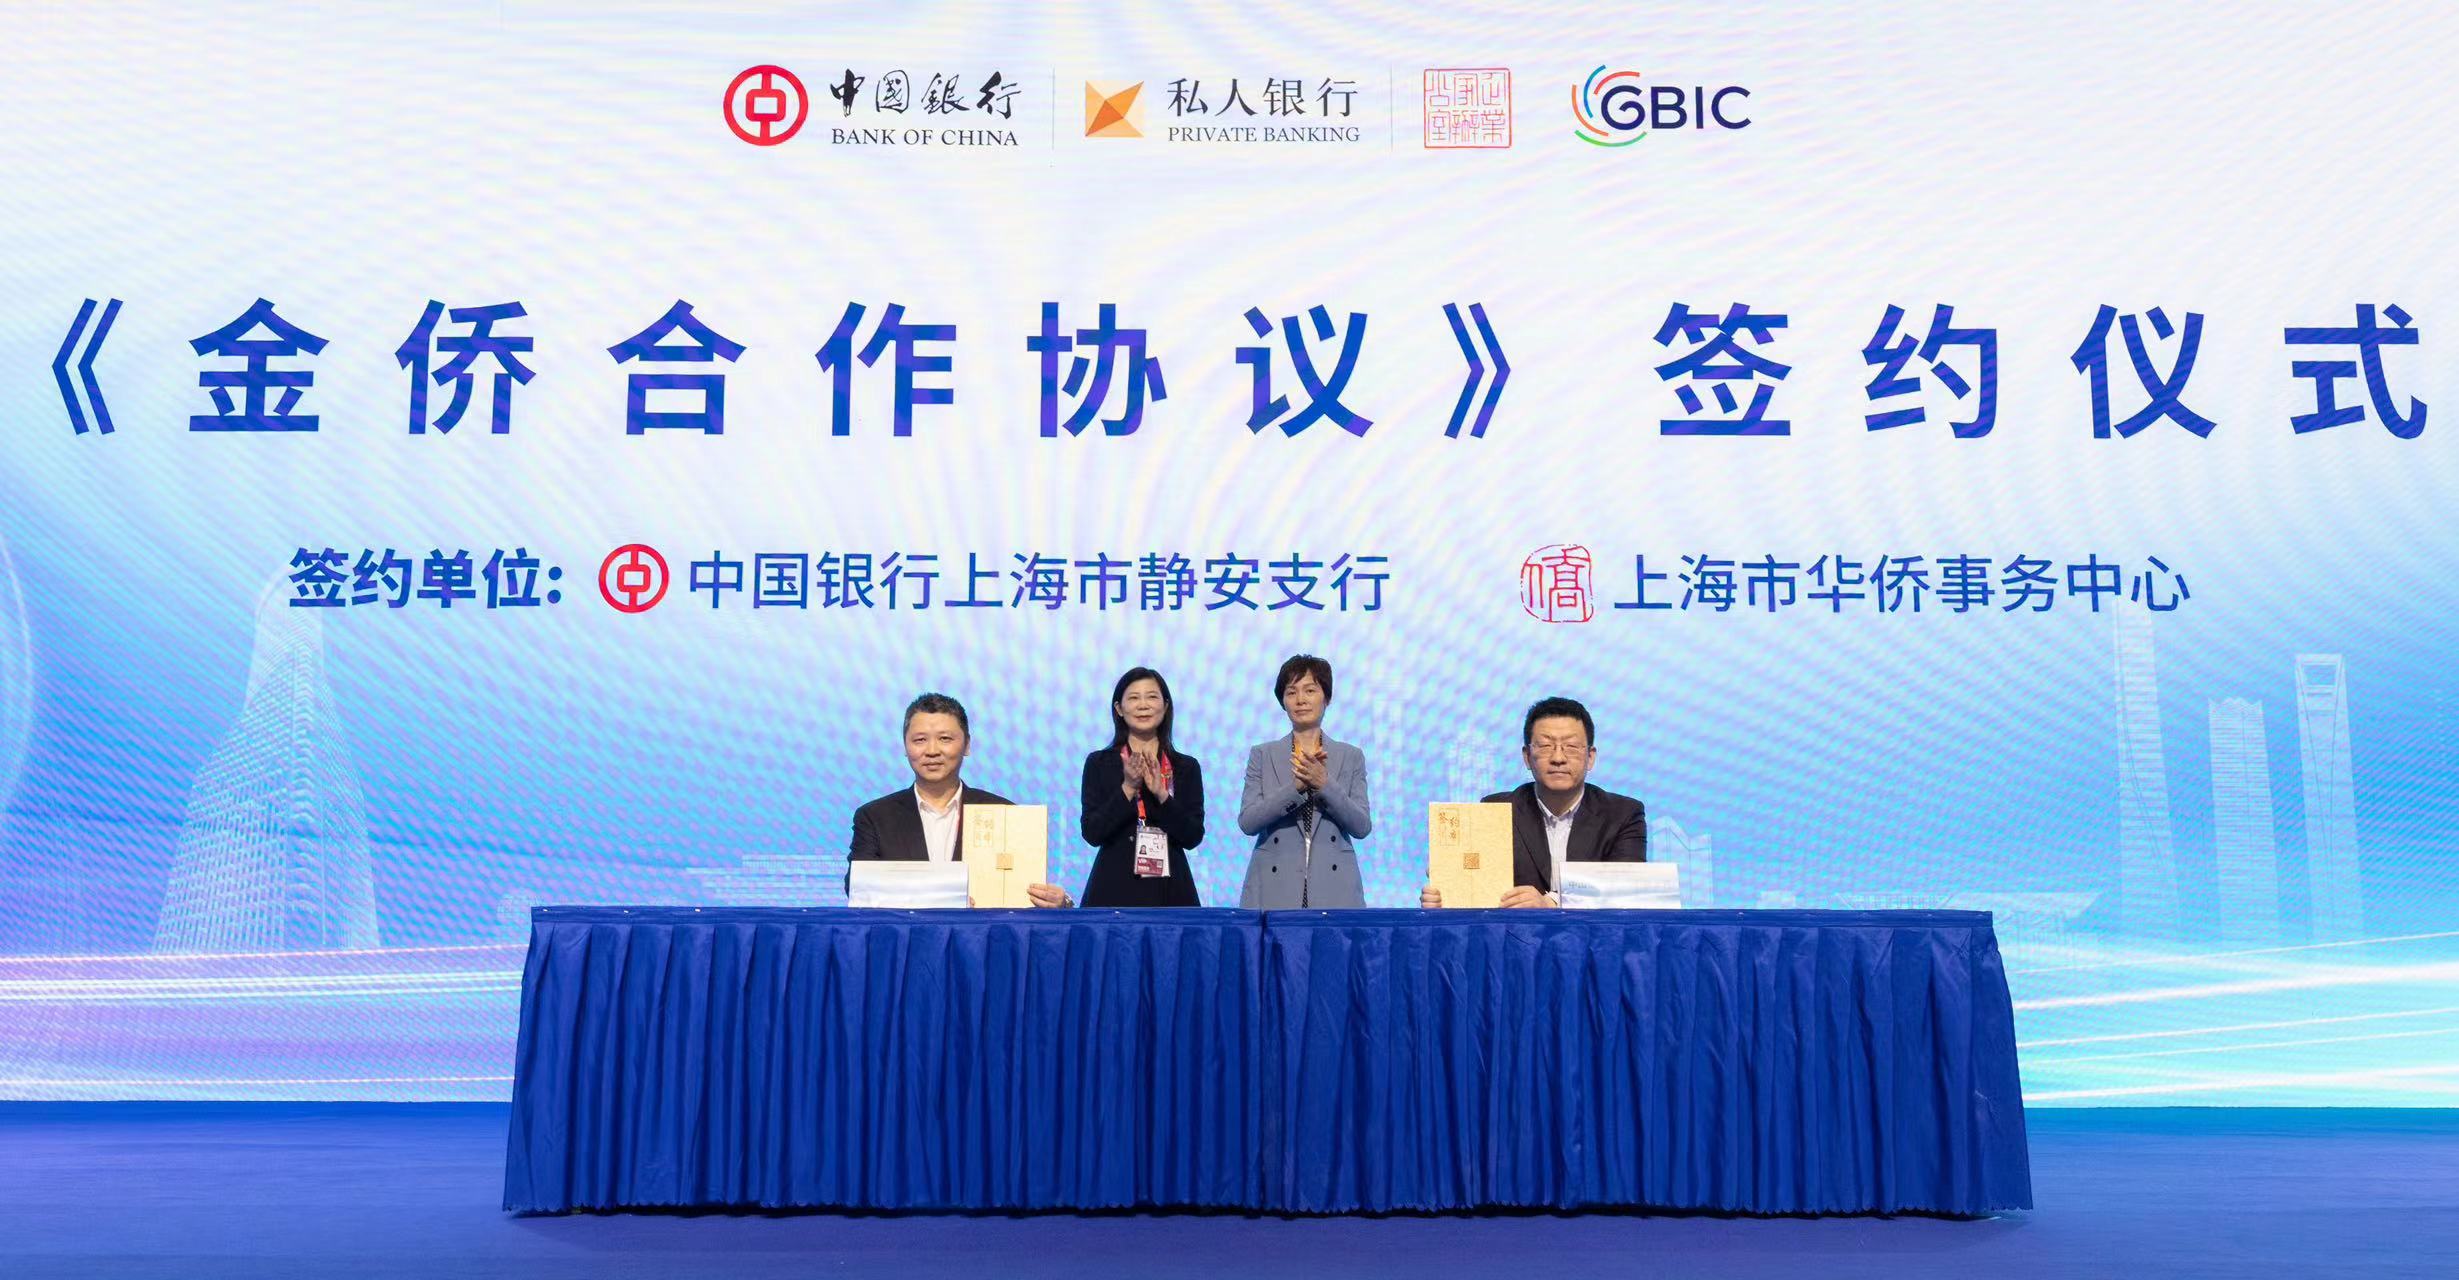 “侨聚进博，投资中国”中国银行企业家办公室GBIC大会在上海进博会期间举办